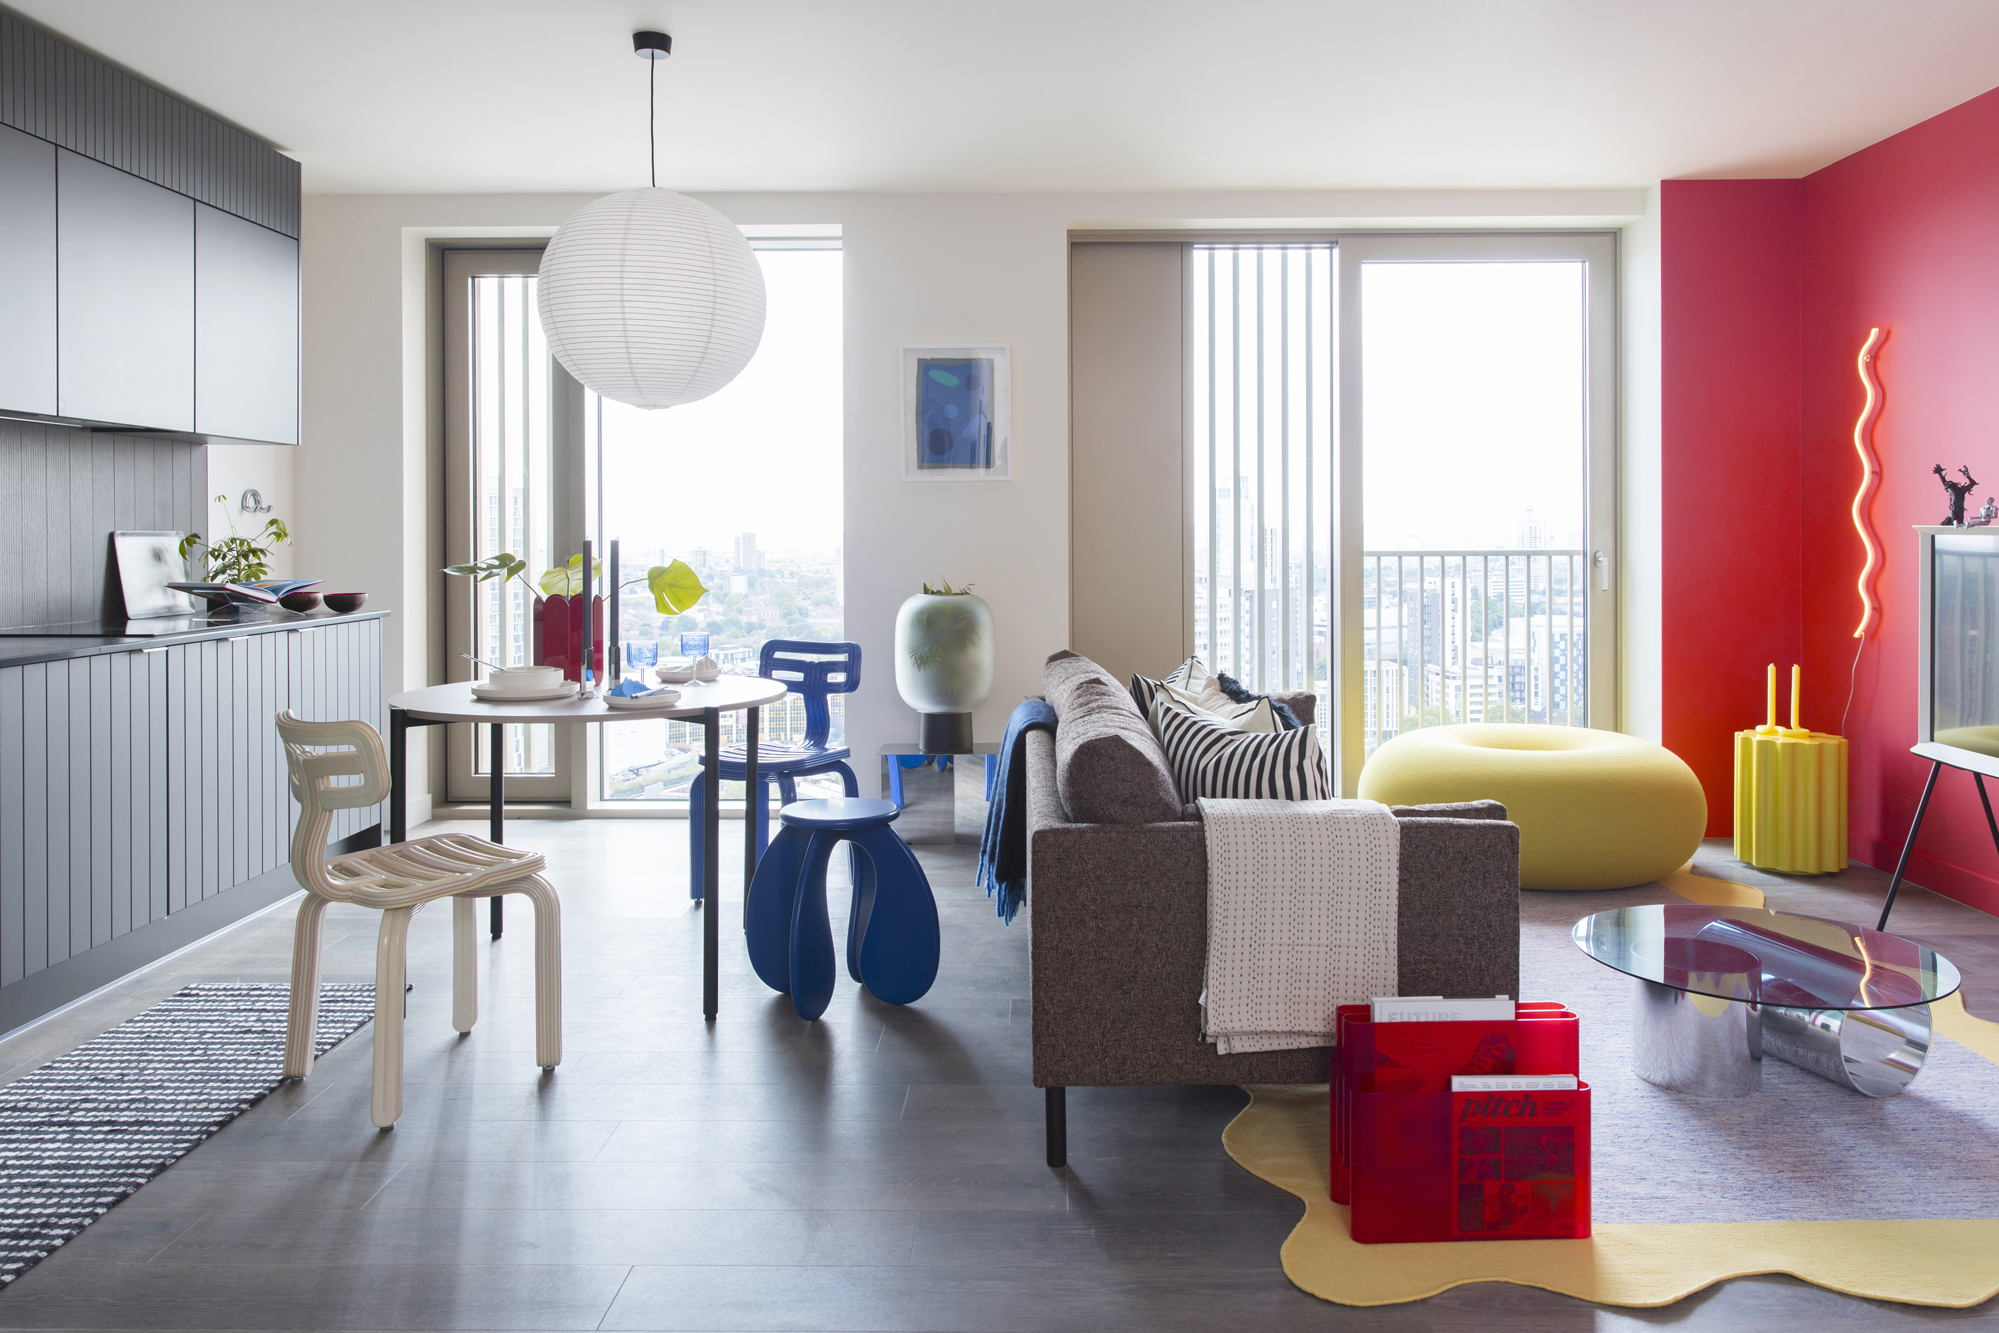 Step into the Future: Futuristic Home Interior Design